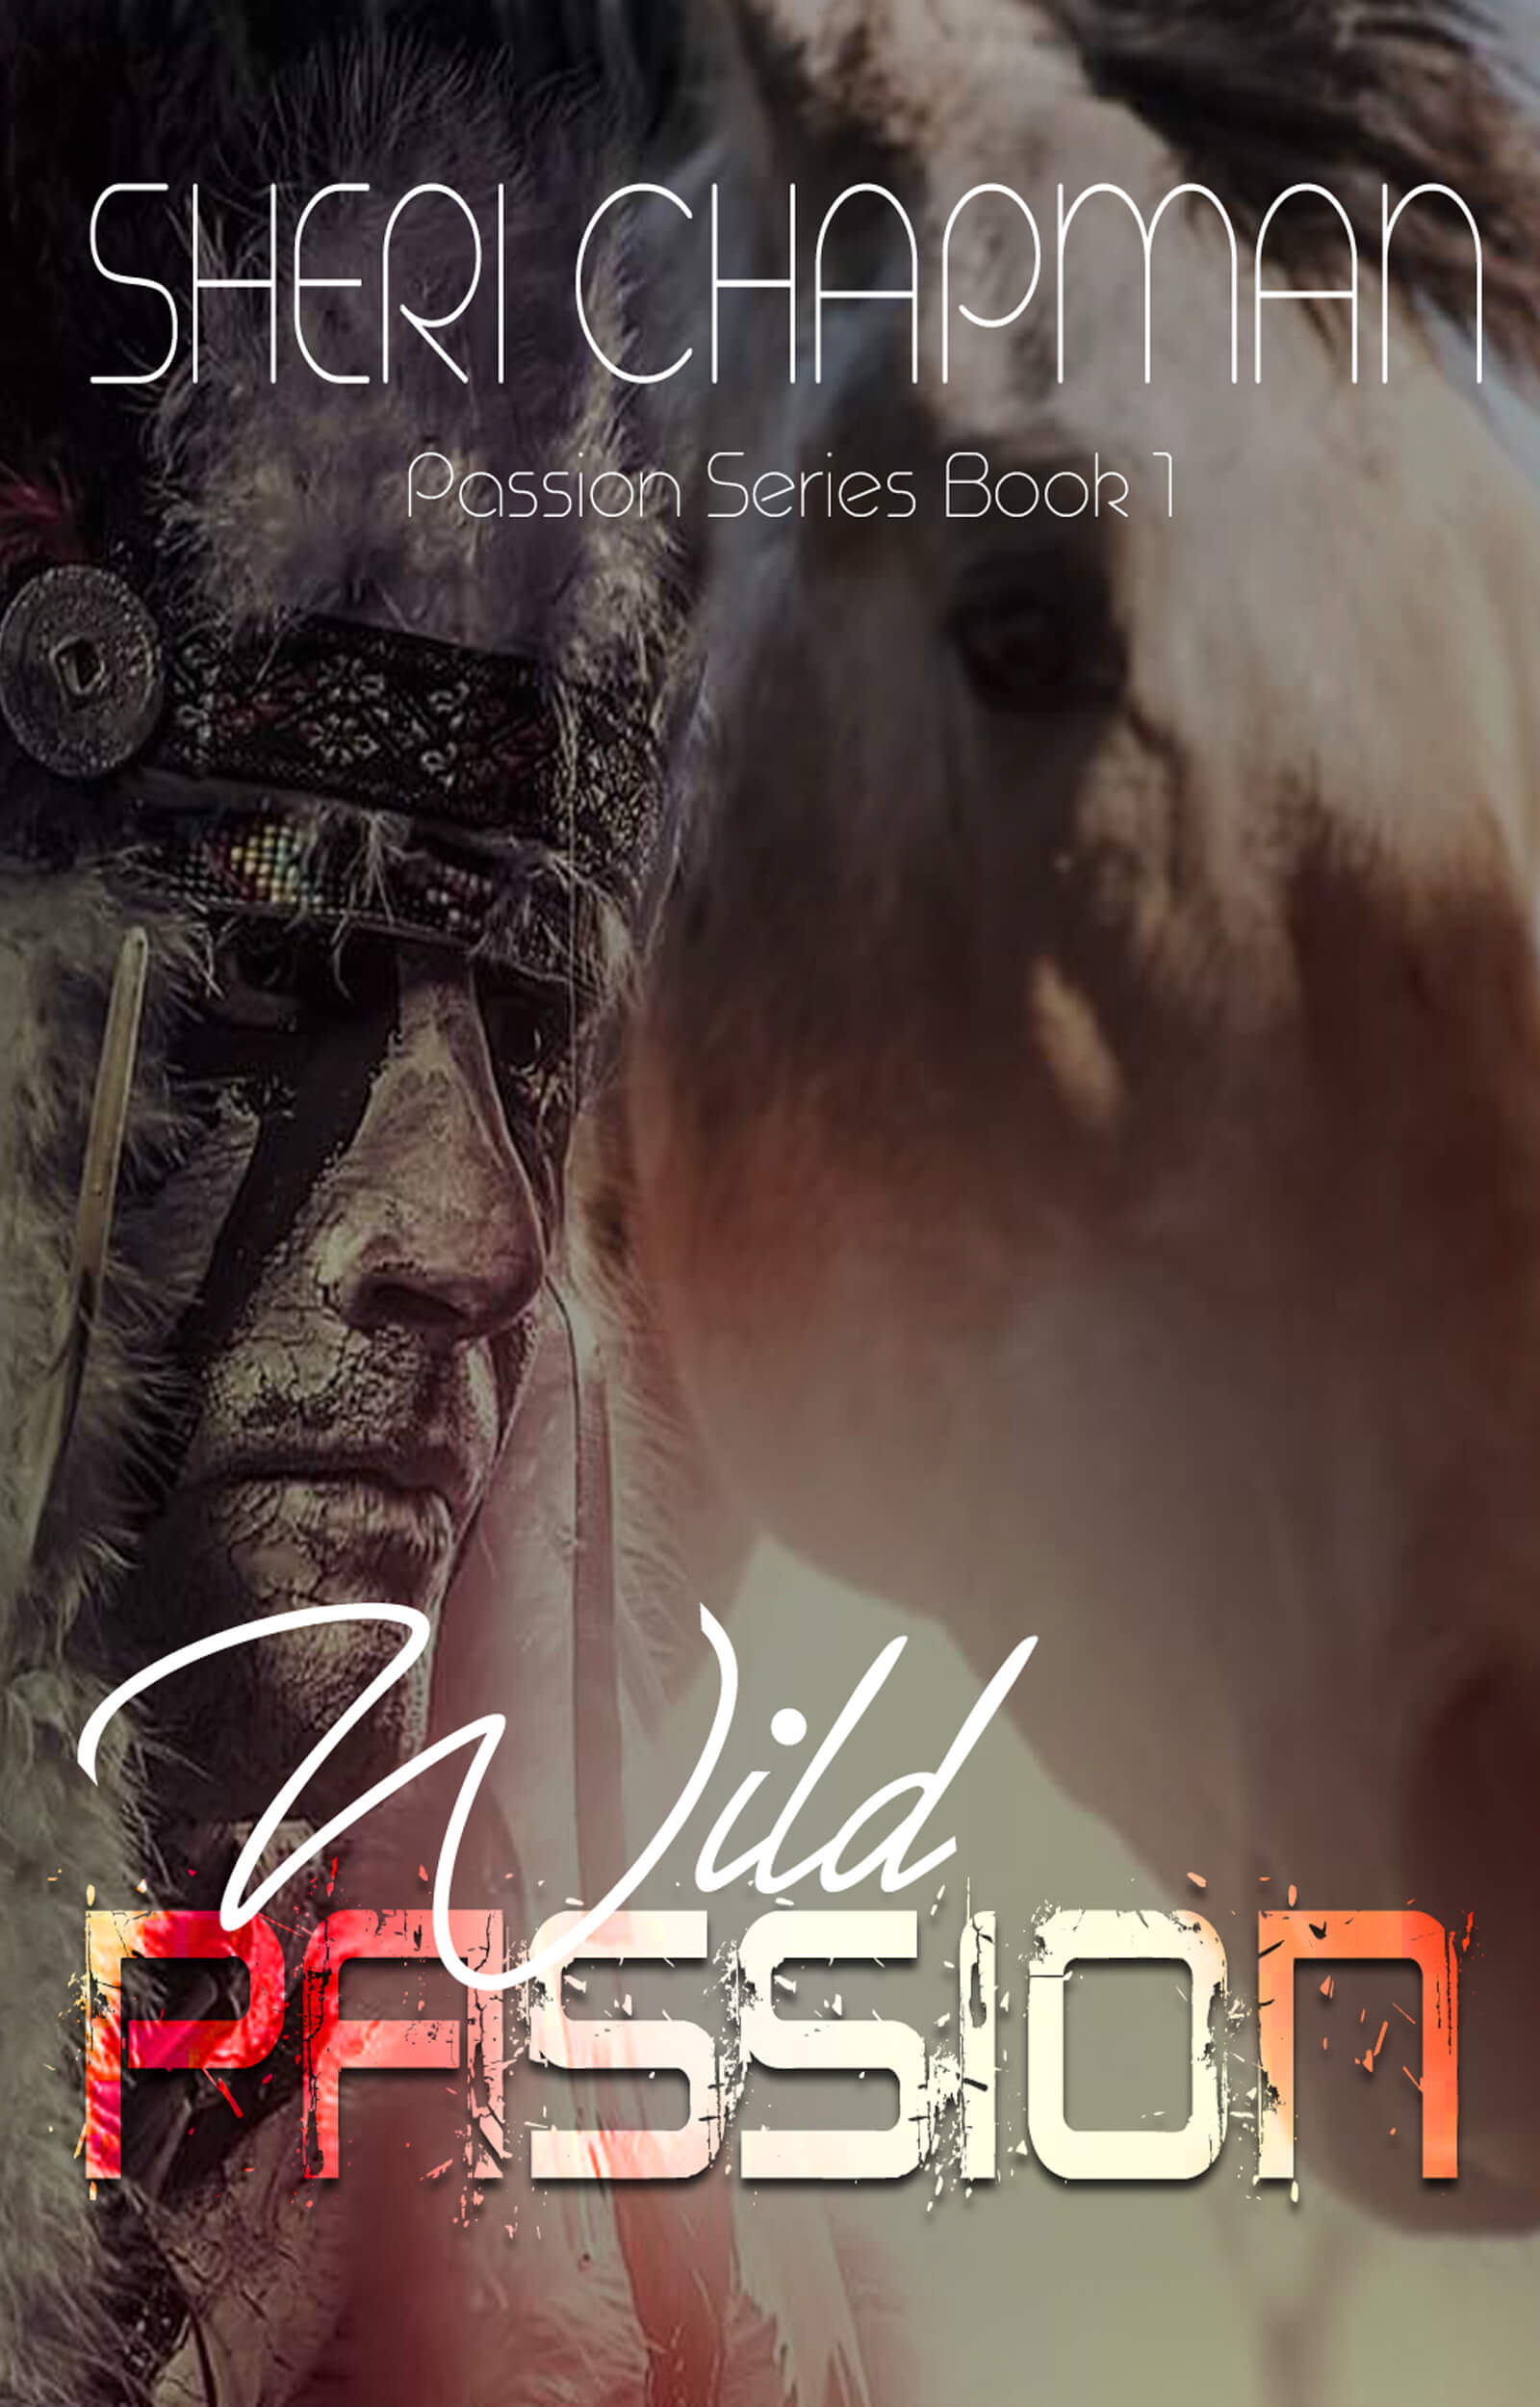 Wild Passion book cover